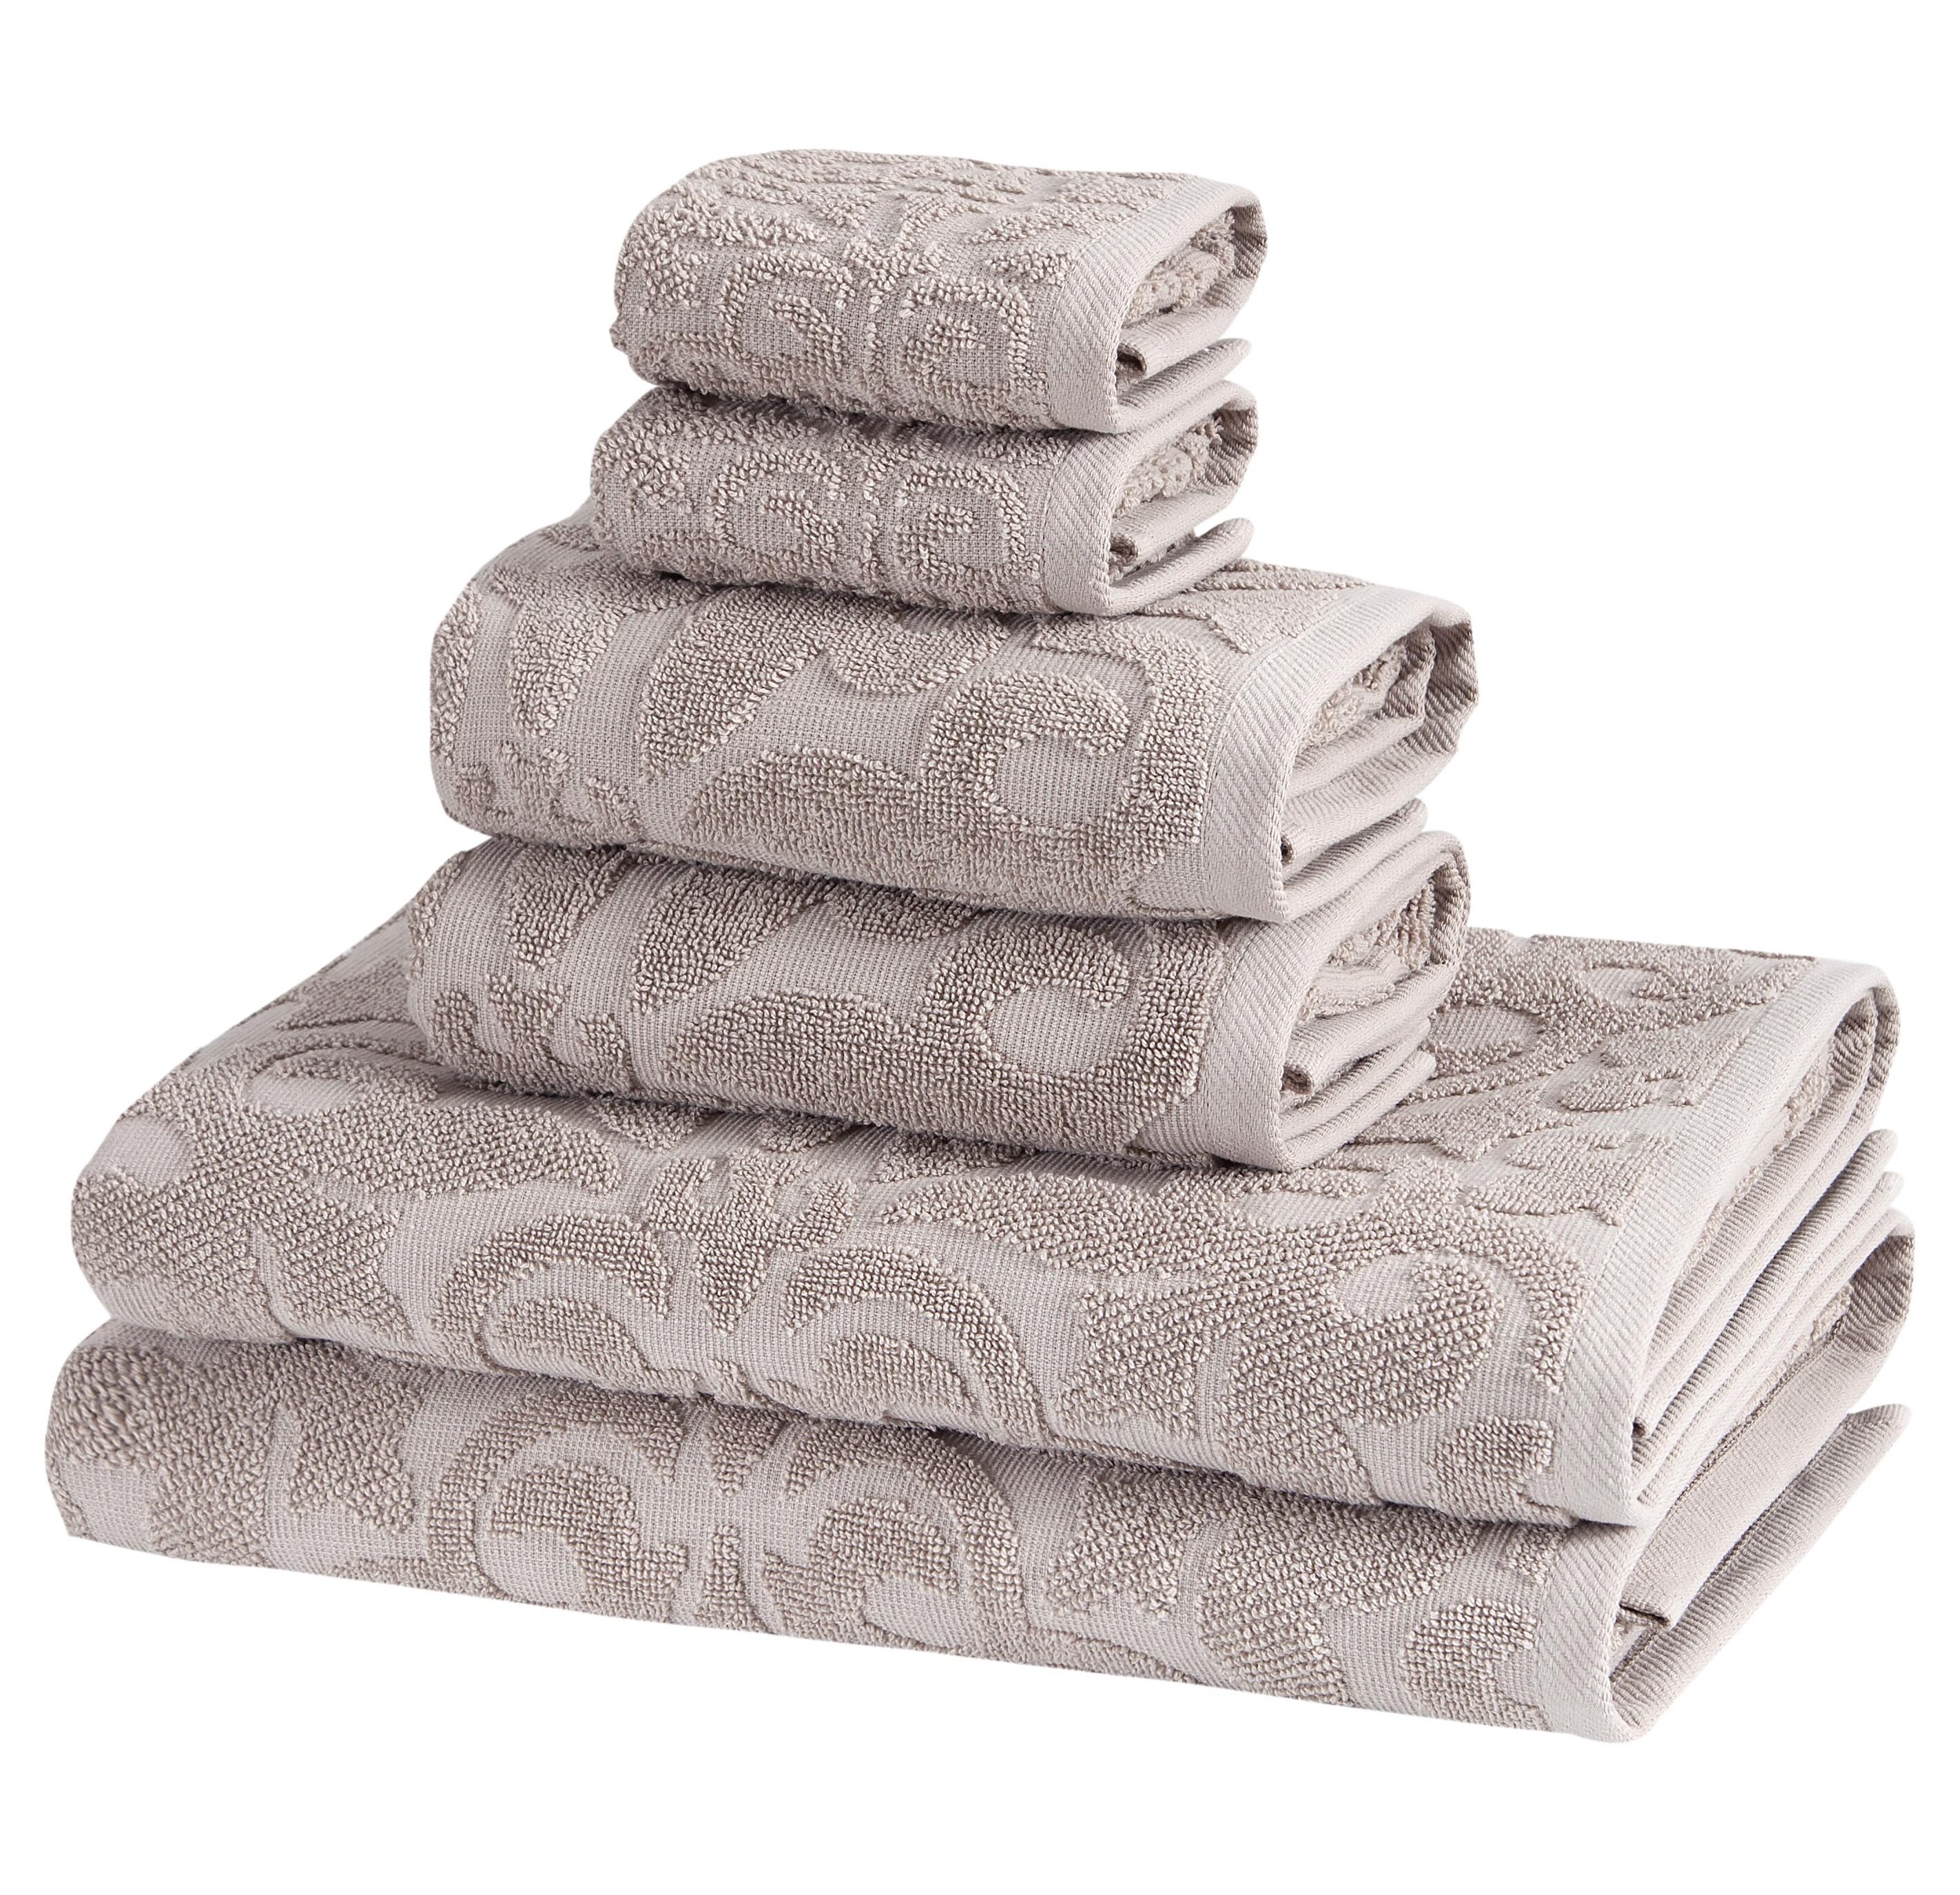 Cascata 6 Piece Turkish Cotton Bath Towel Set (Set of 6) Wade Logan Color: White